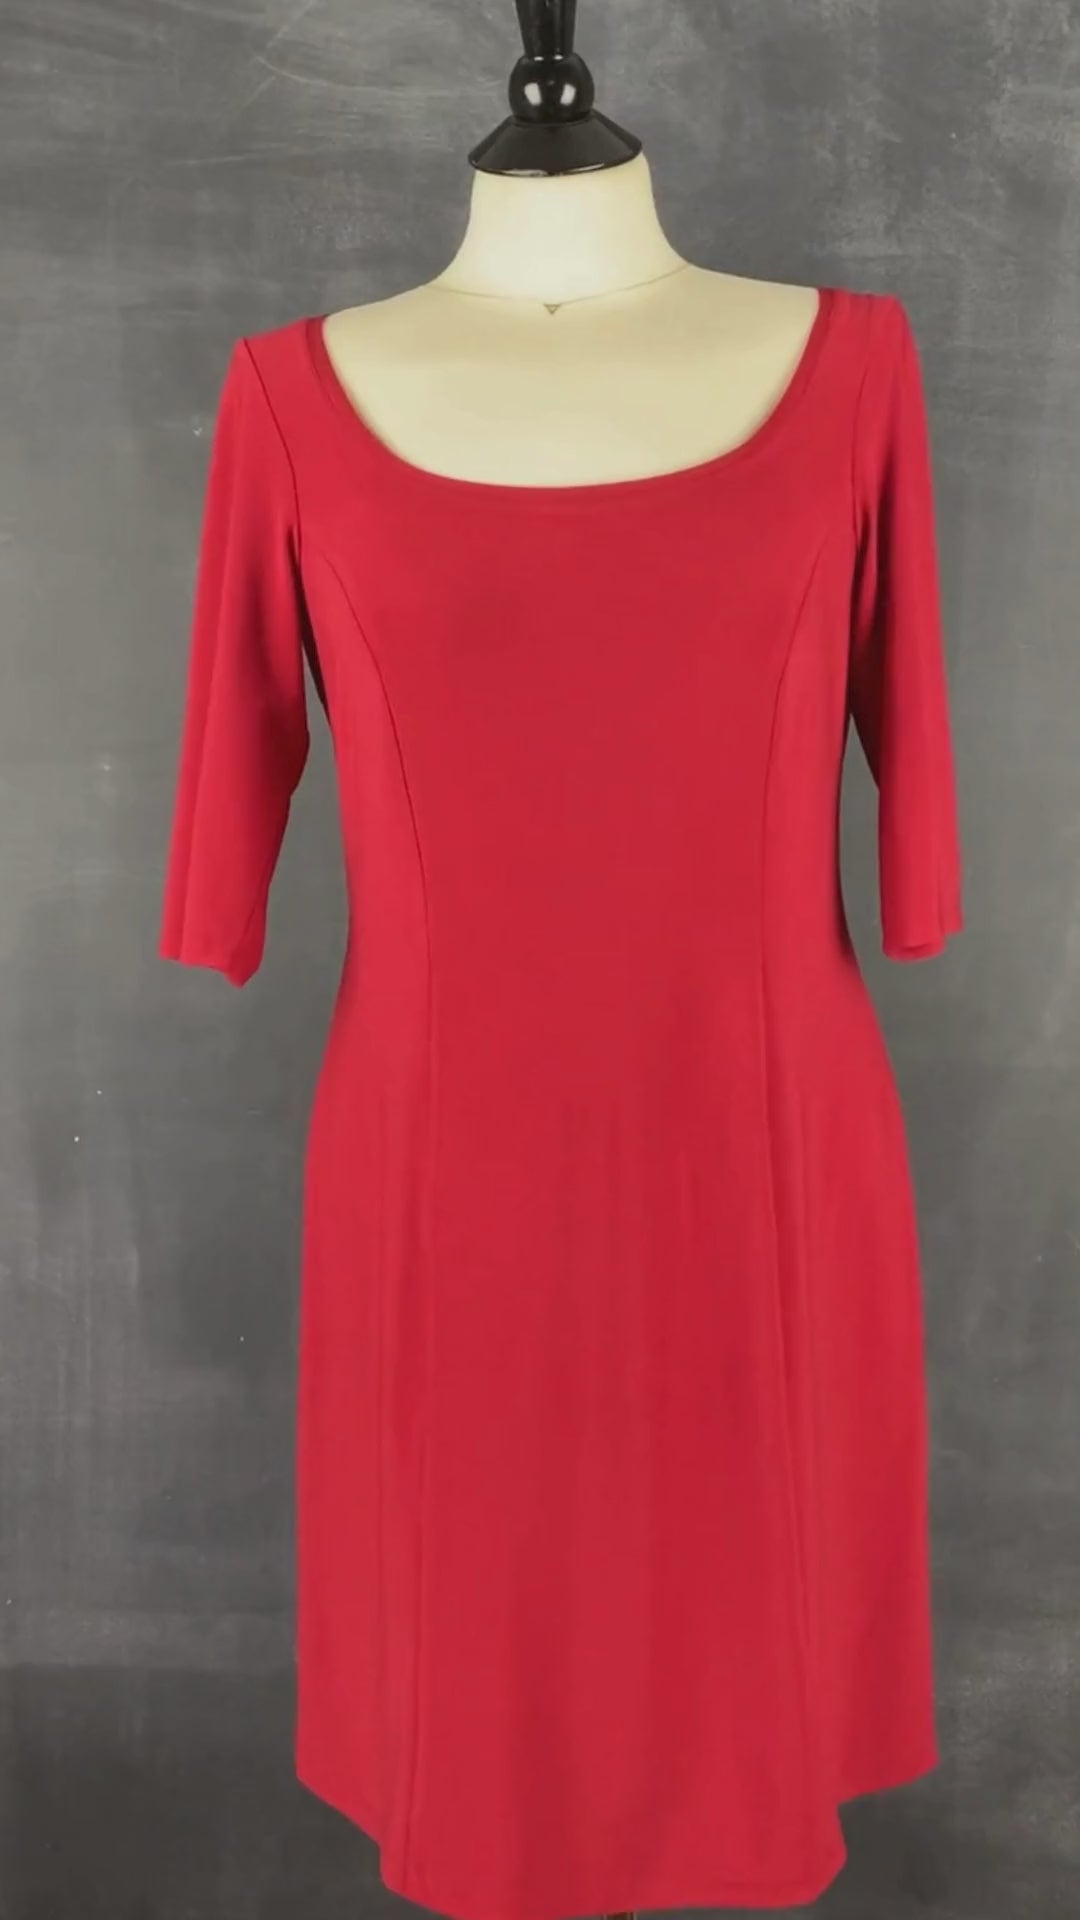 Robe cintrée rouge Isabelle Elie, taille large (m/l). Vue de la vidéo qui présente tous les détails de la robe.